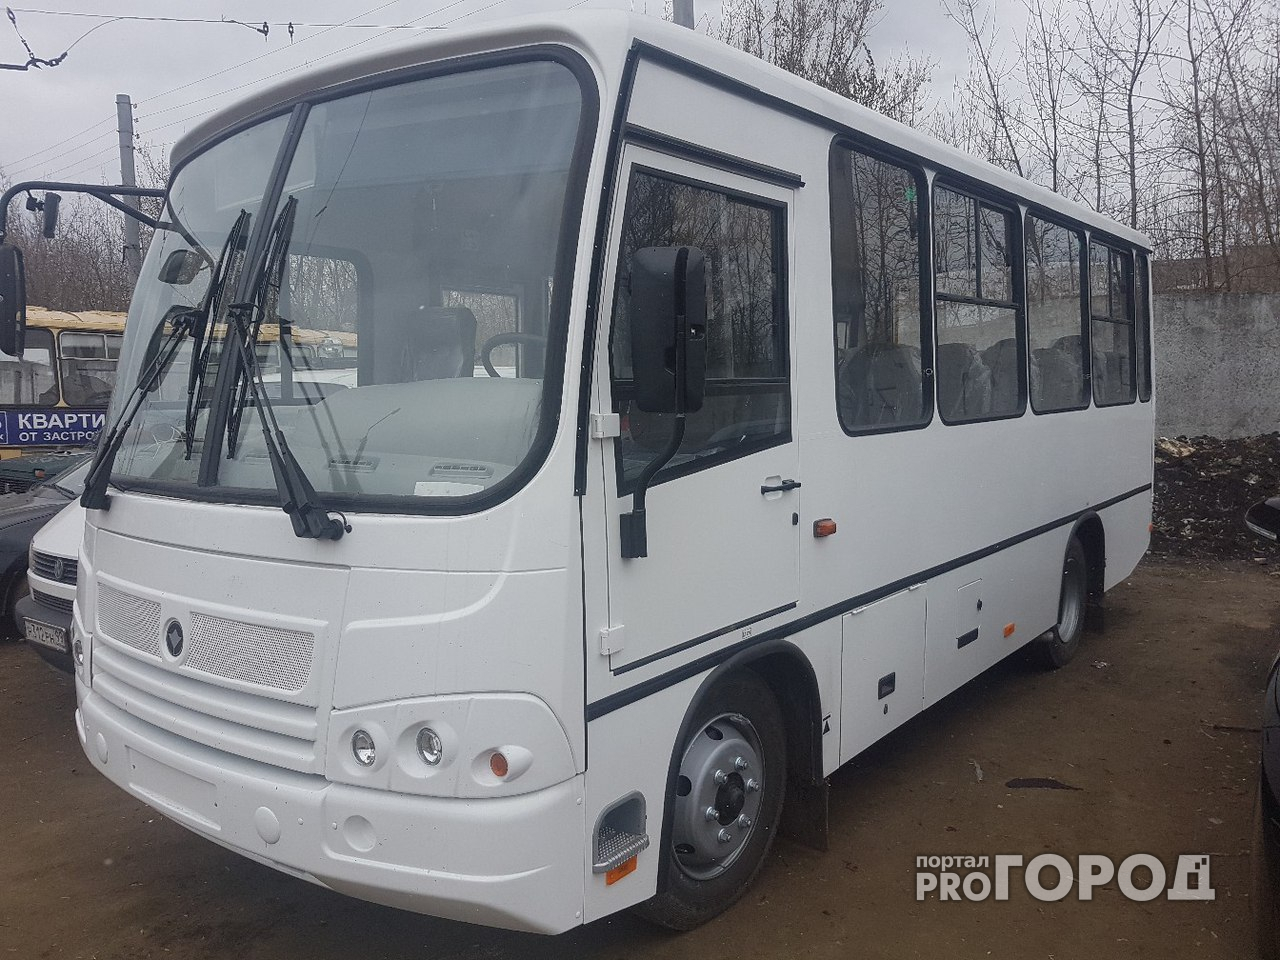 В Кирове начнут ездить не загрязняющие атмосферу автобусы